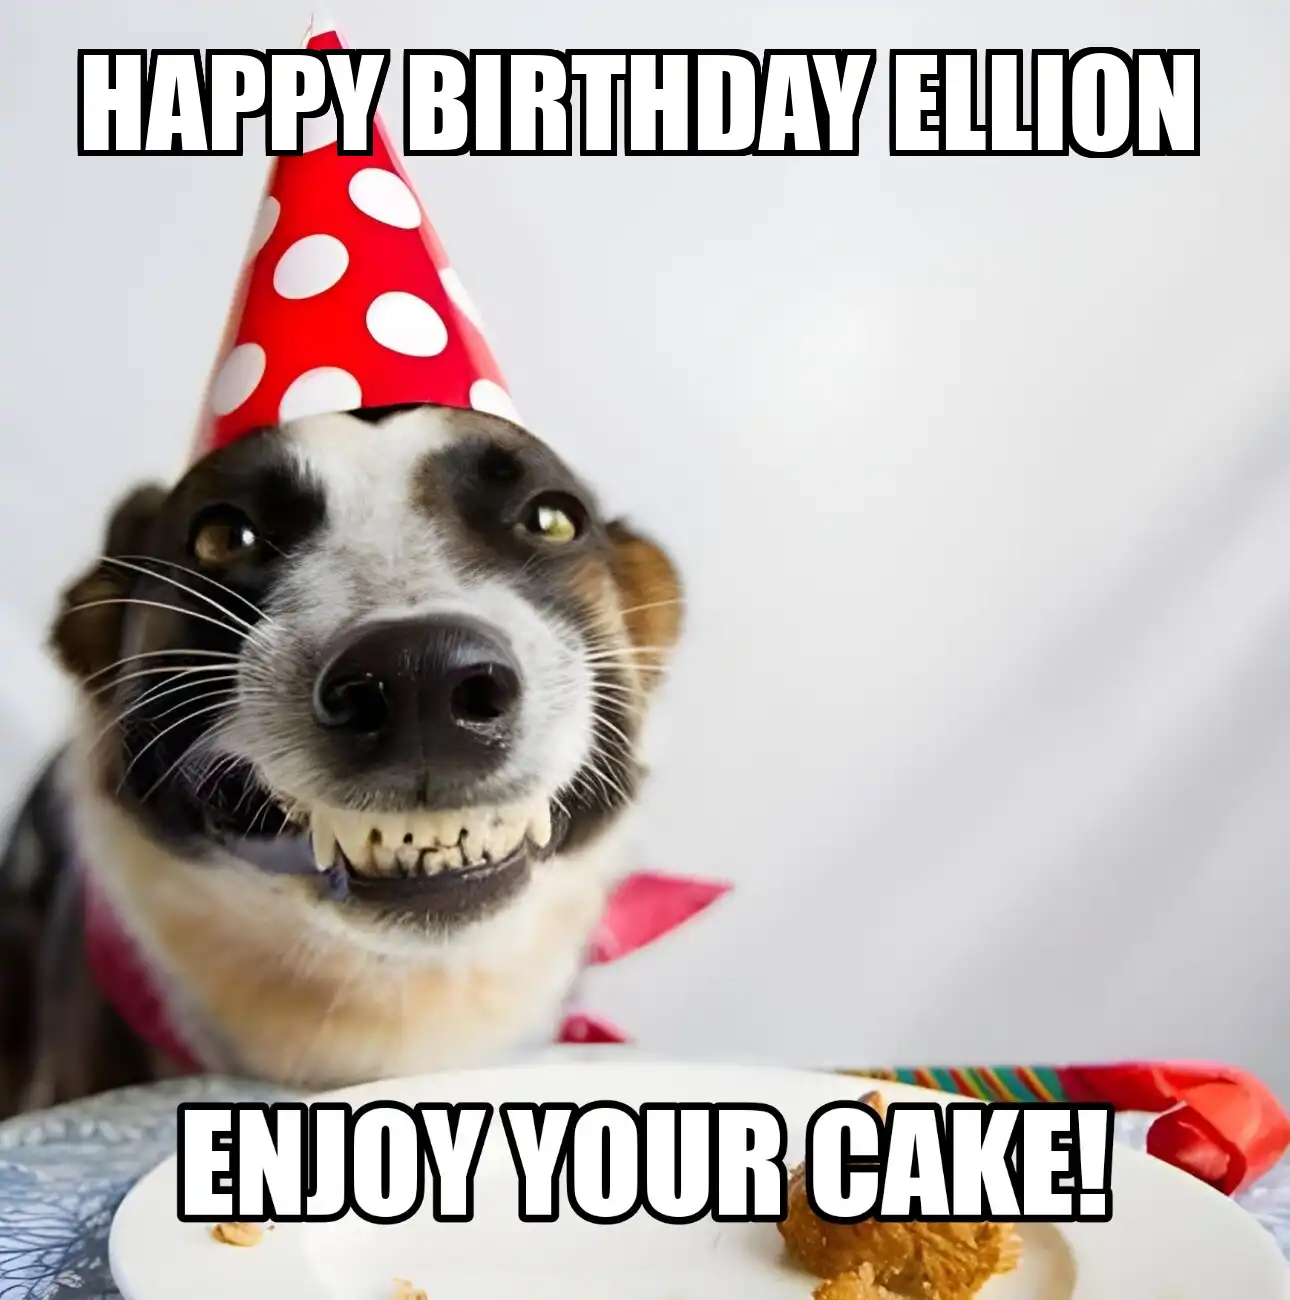 Happy Birthday Ellion Enjoy Your Cake Dog Meme